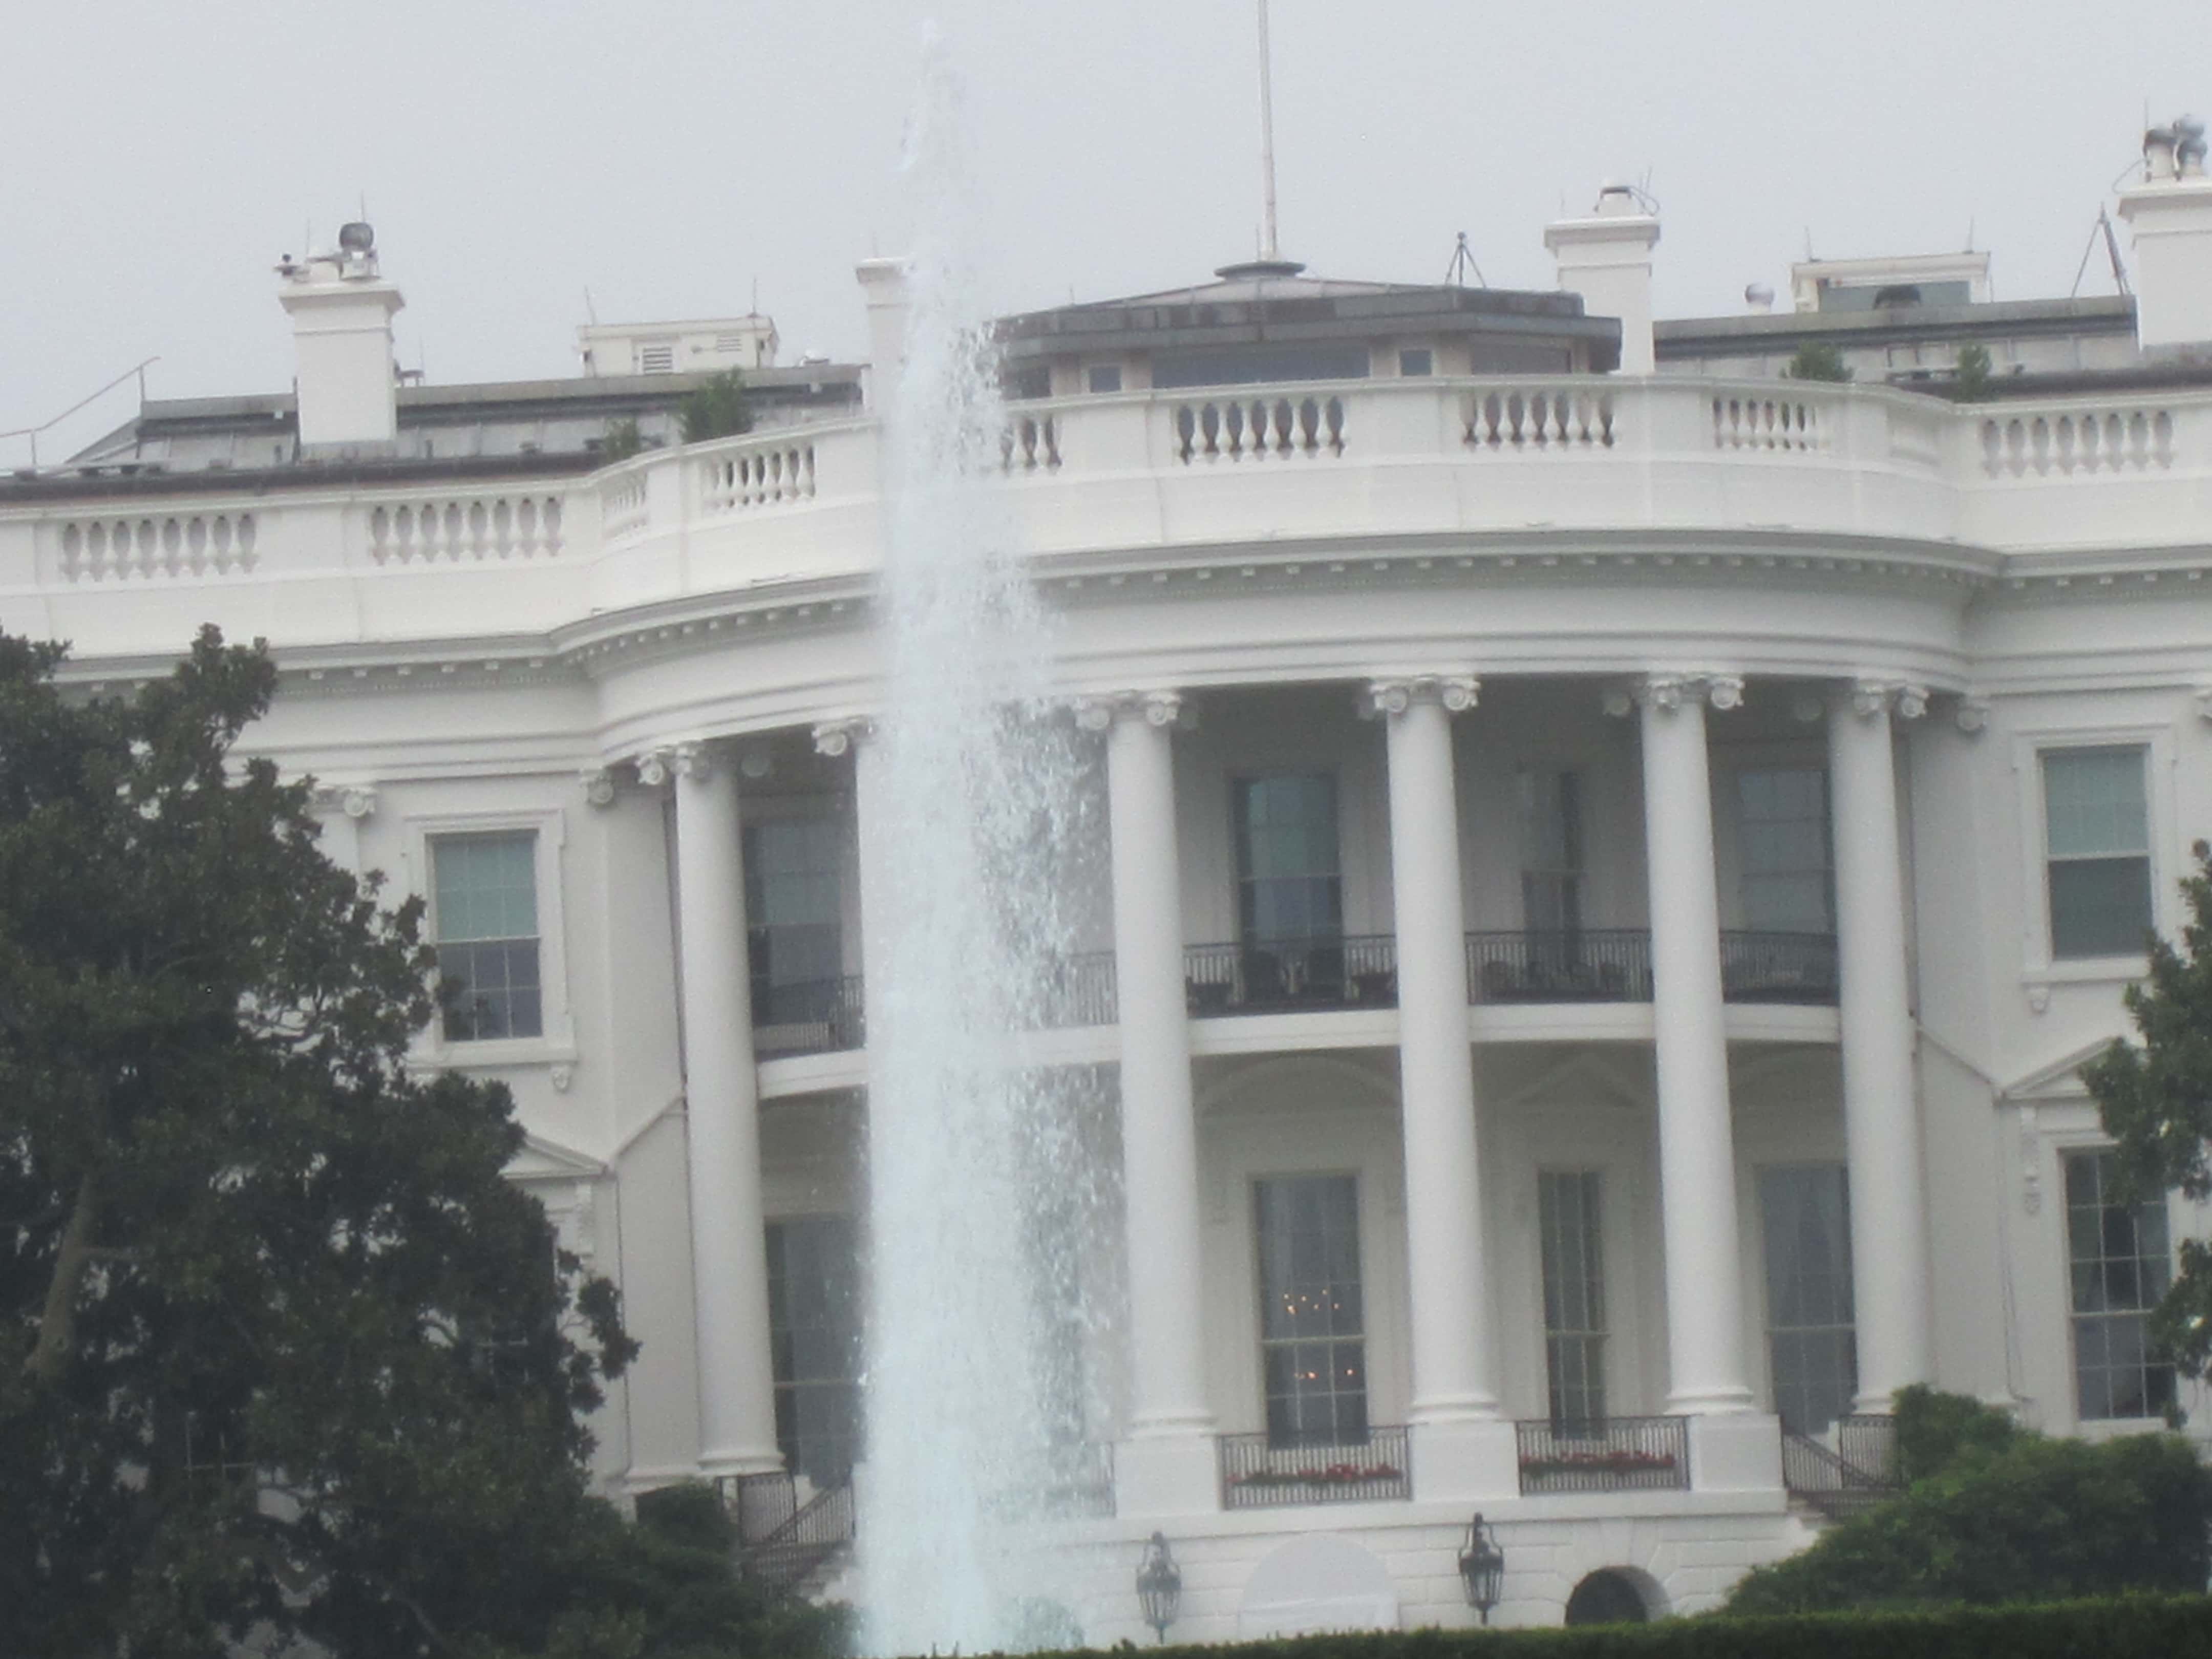 Tilting White House (taken by my grandson Noah) - Washington DC